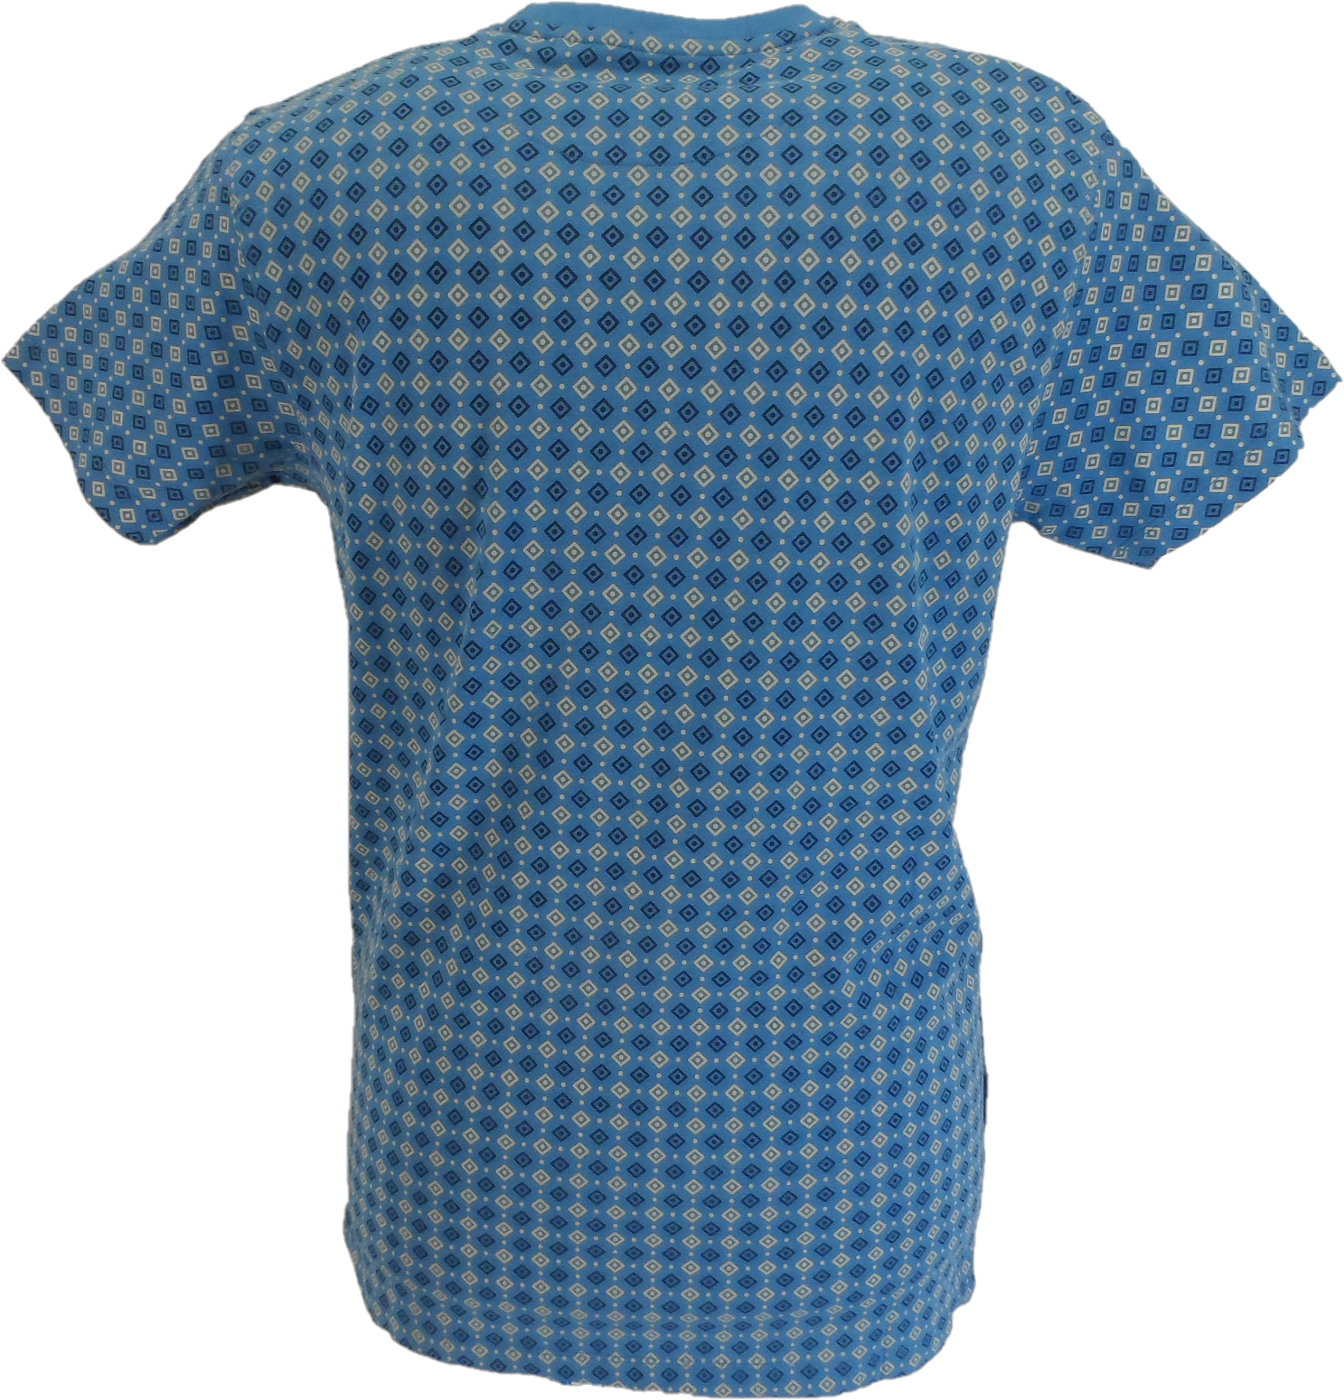 Lambretta Herren-T-Shirt mit durchgehendem geometrischem Print in Vallarta-Blau